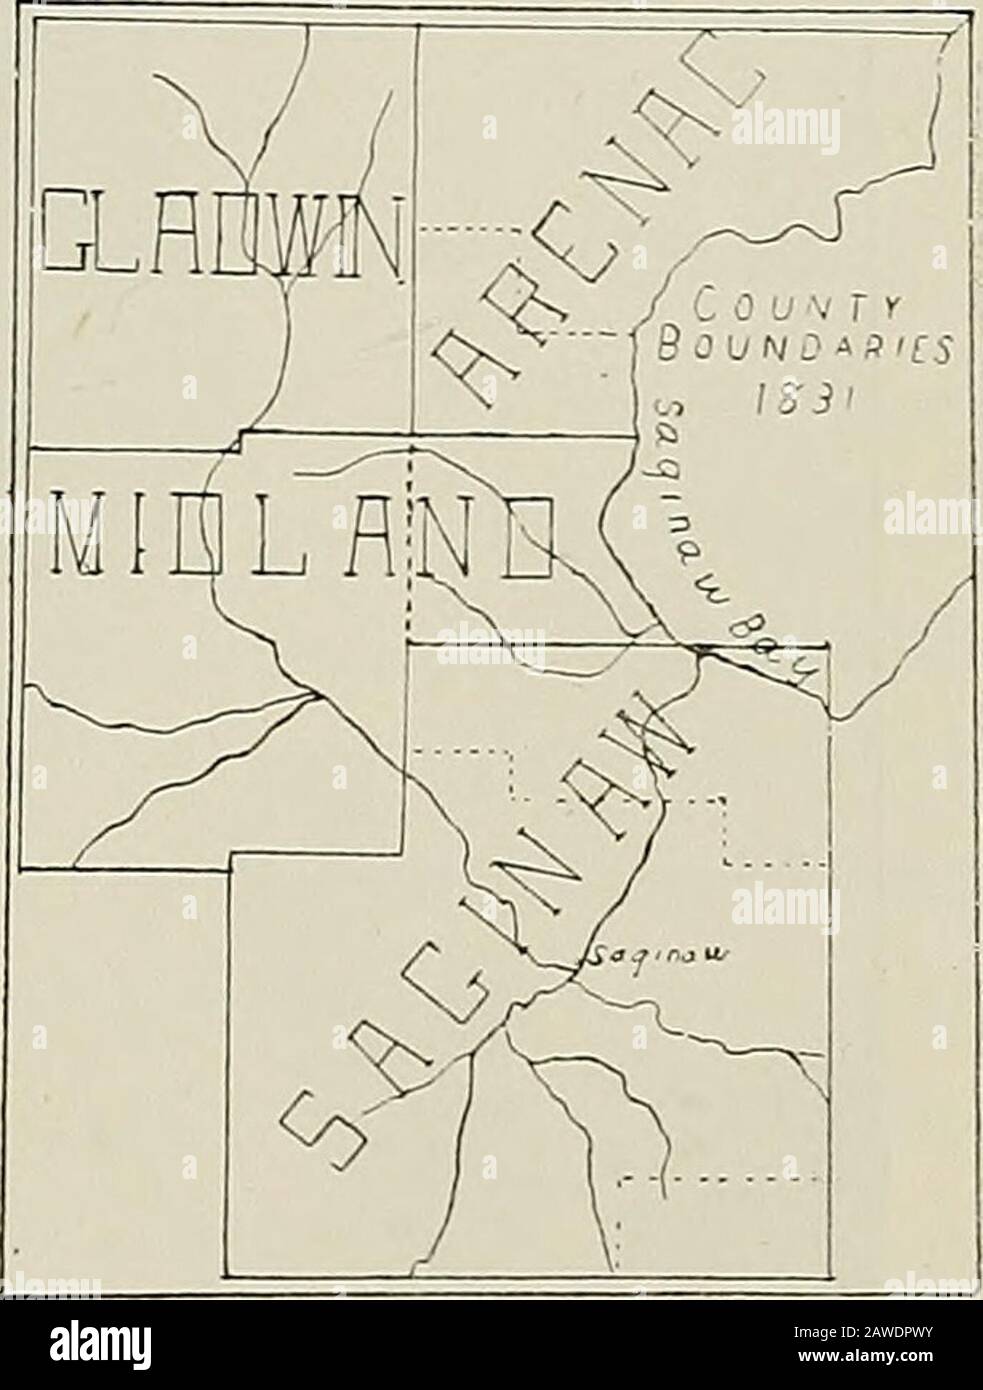 Contea di Bay passato e presente . rn boun^daries di Williams e Monitor Townships, ma la valle è stato ancora governato attraverso Oakland. (2) Poi, nel 1831, quando più persone si trasferirono nelle contee di Saginaw Valley, Midland e Arenac si erano formate, la contea di Saginaw comprendeva il sud, Midland il centro(3), E Arenac la parte settentrionale (4) dell'attuale Bay County..Ma ancora il governo di tutti i northeasternMichigan è stato portato avanti attraverso SaginawCounty, come le altre contee non sono stati yetorganized con i funzionari regolari della contea. Tra il 1805 e il 1837 i settlementdel Michigan meridionale erano stati rapi Foto Stock